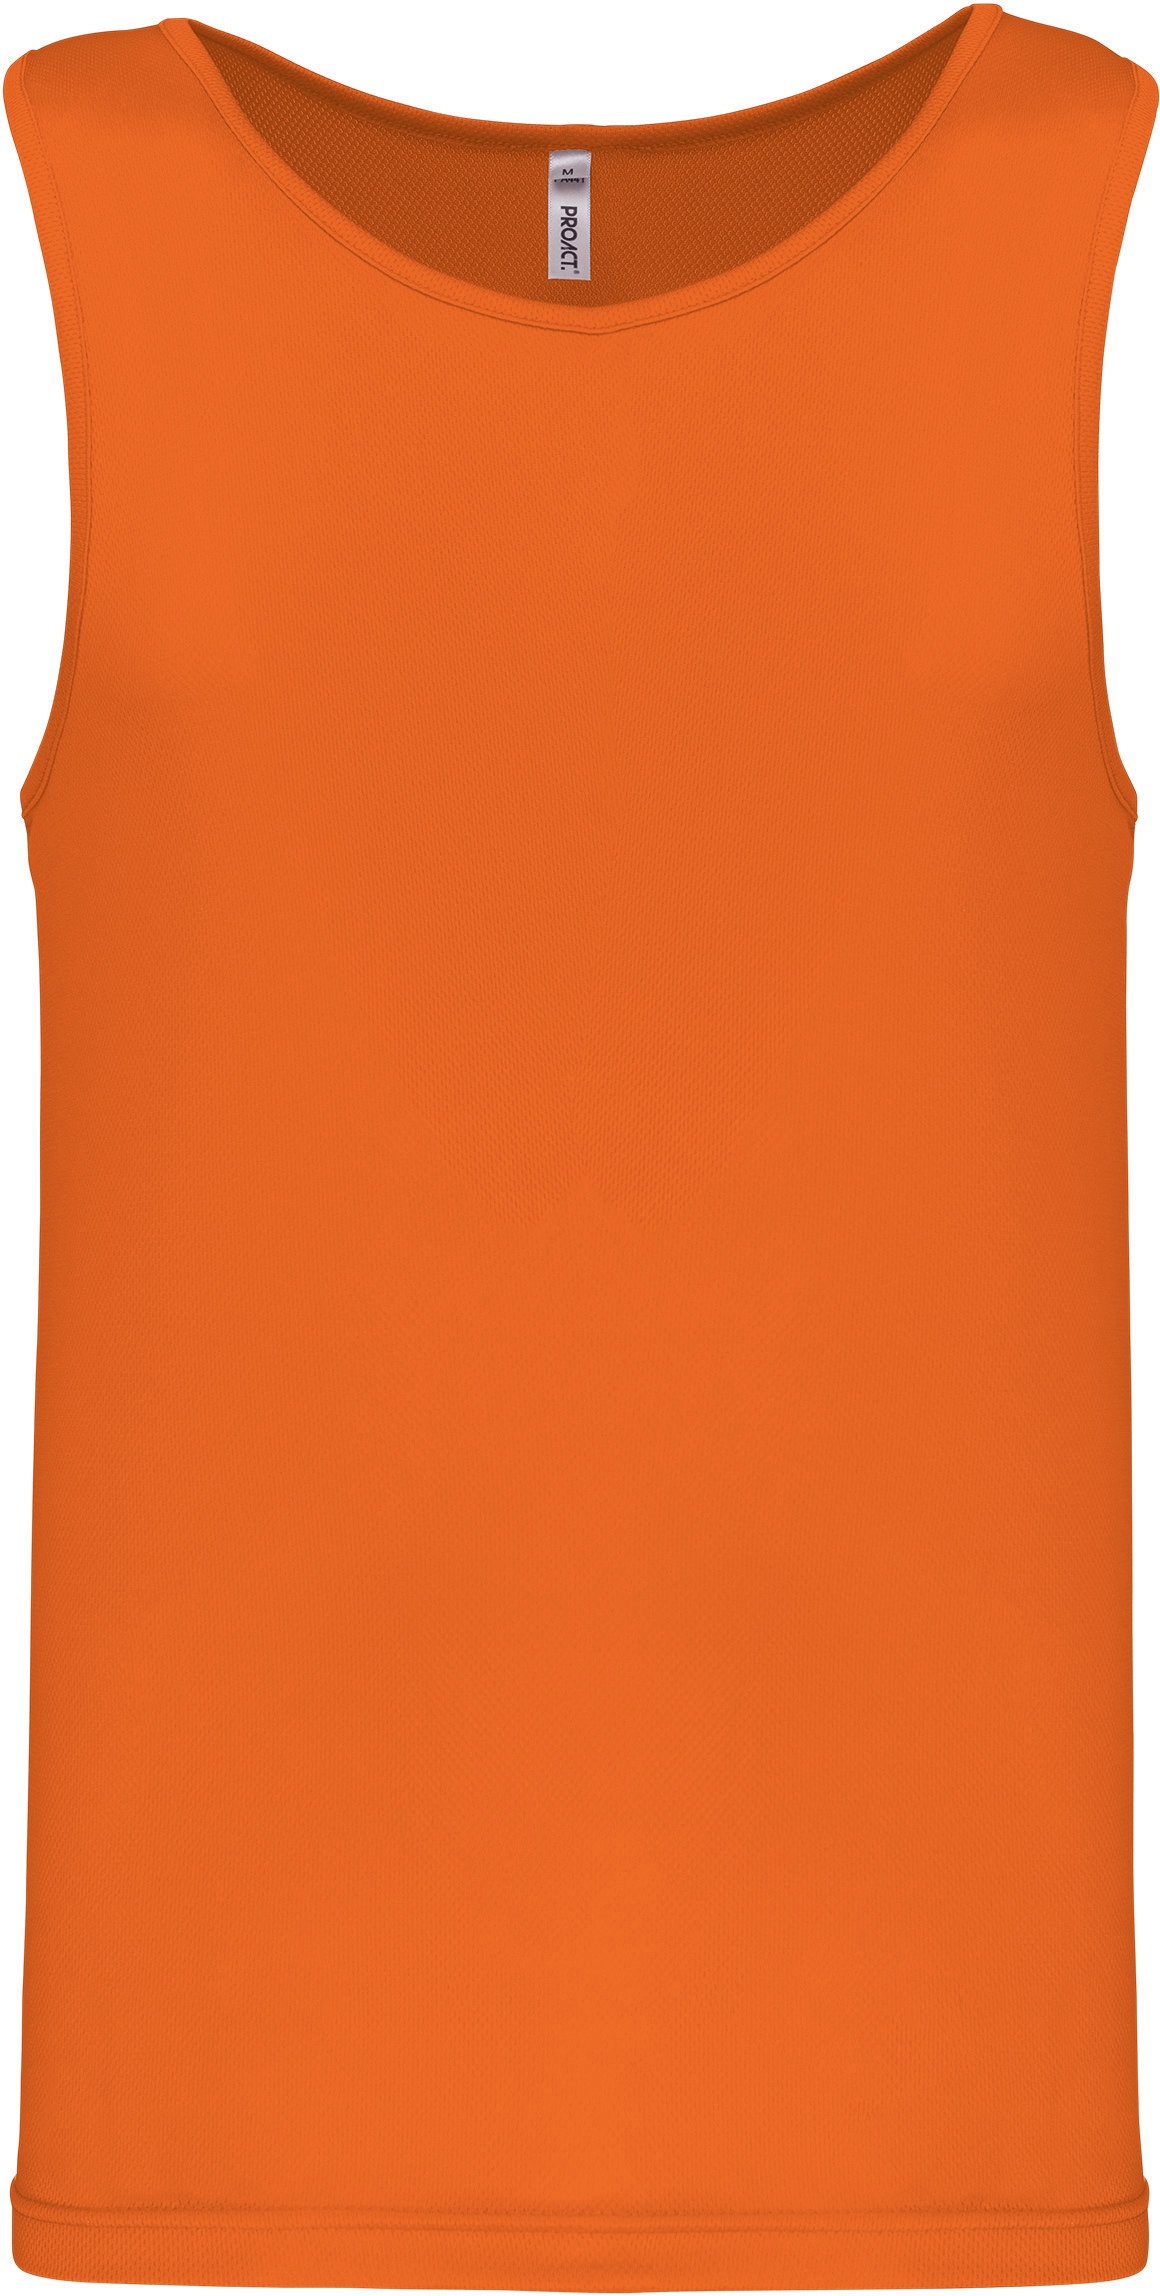 Pánské funkční tílko Barva: neon orange, Velikost: S